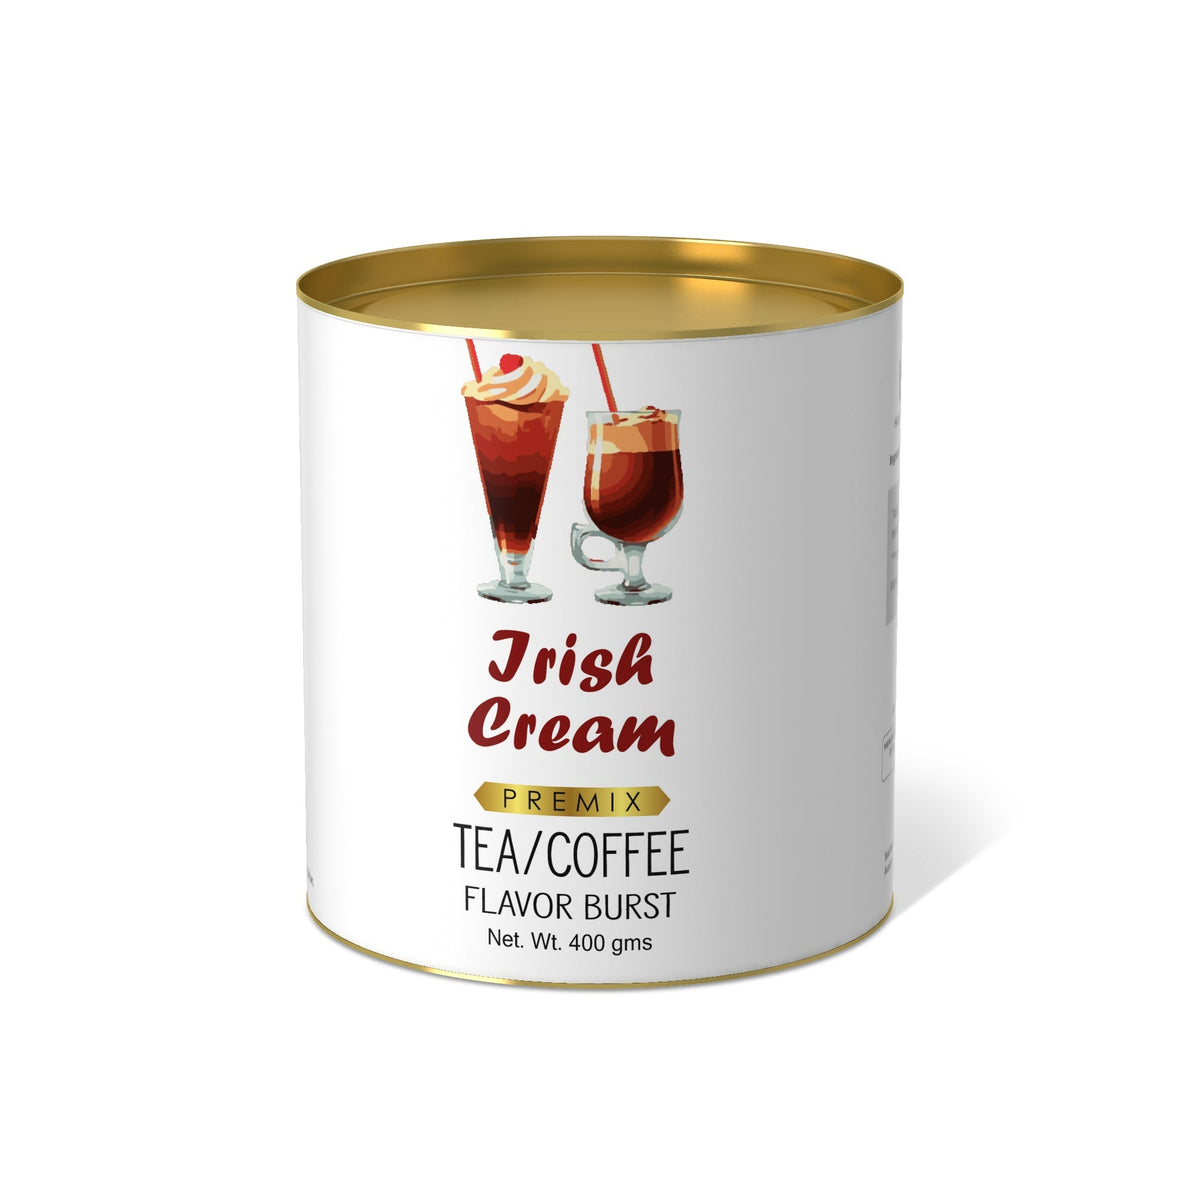 Irish Cream Flavor Burst - 800 gms